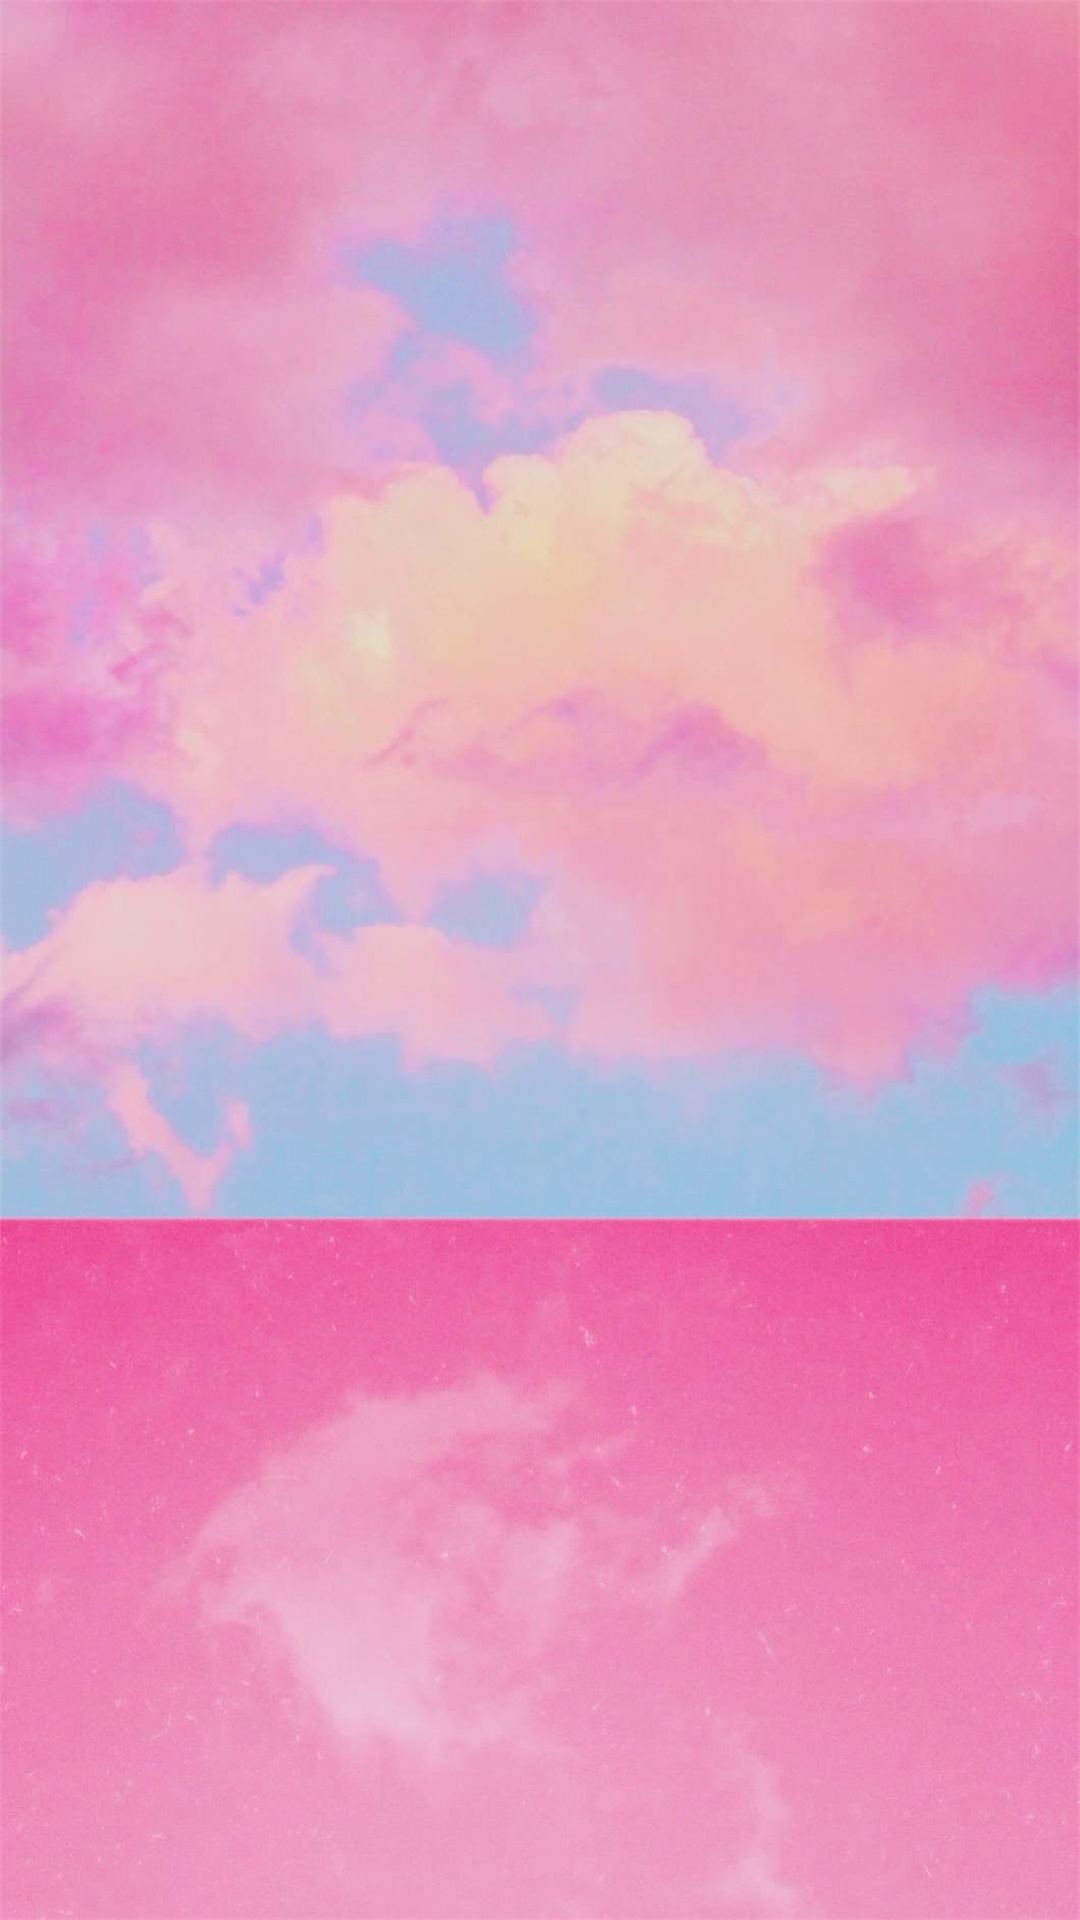 【壁纸】粉色天空/不一样的天空,不一样的人生